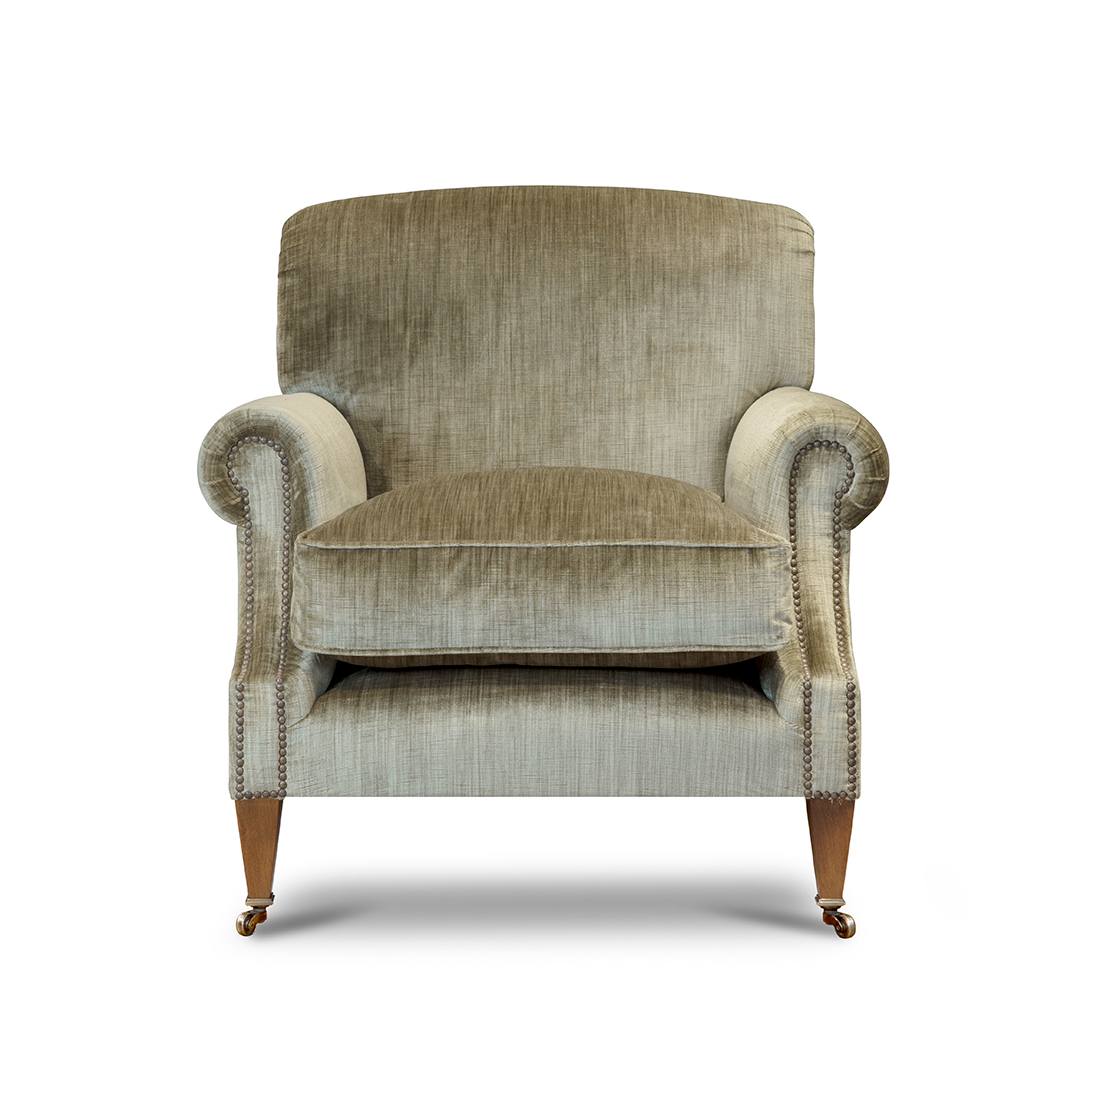 Milton chair in Como silk velvet - Fern - Beaumont & Fletcher